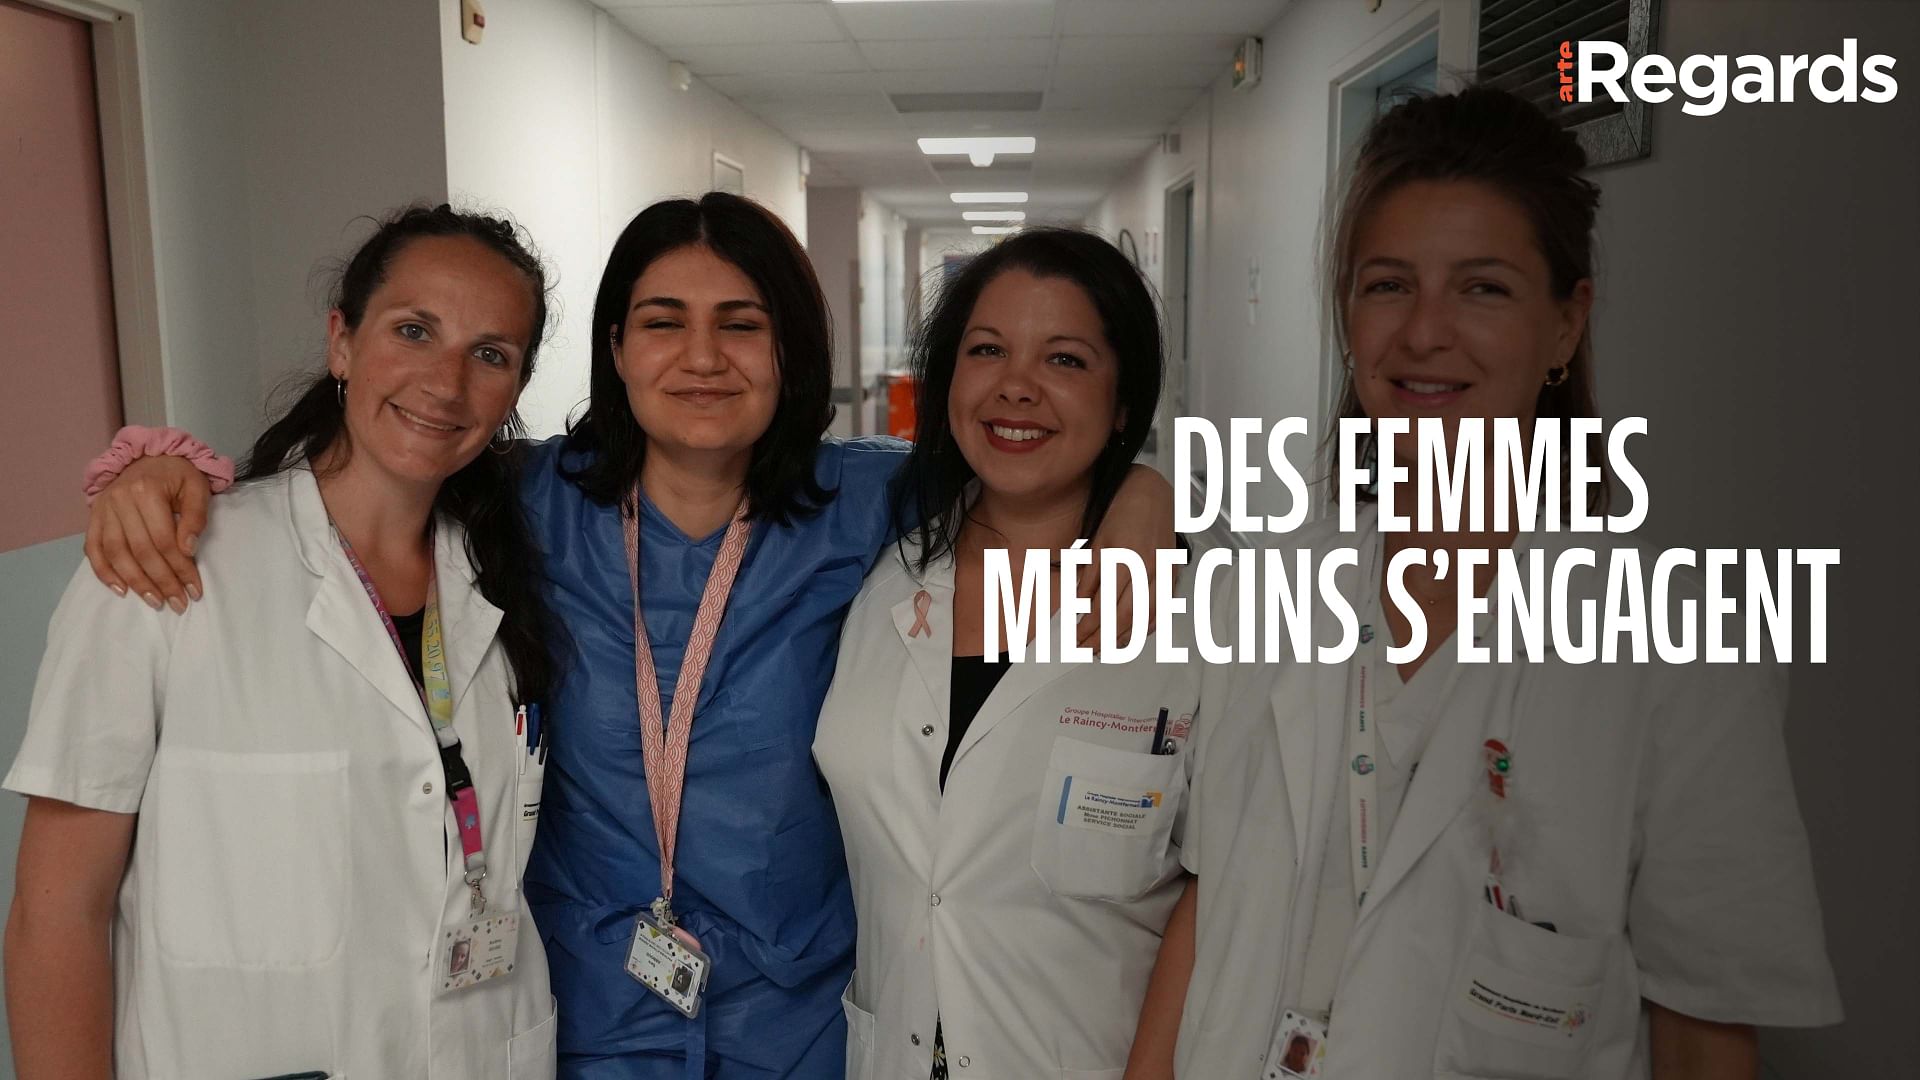 ARTE Regards - Mères migrantes : des femmes médecins s’engagent